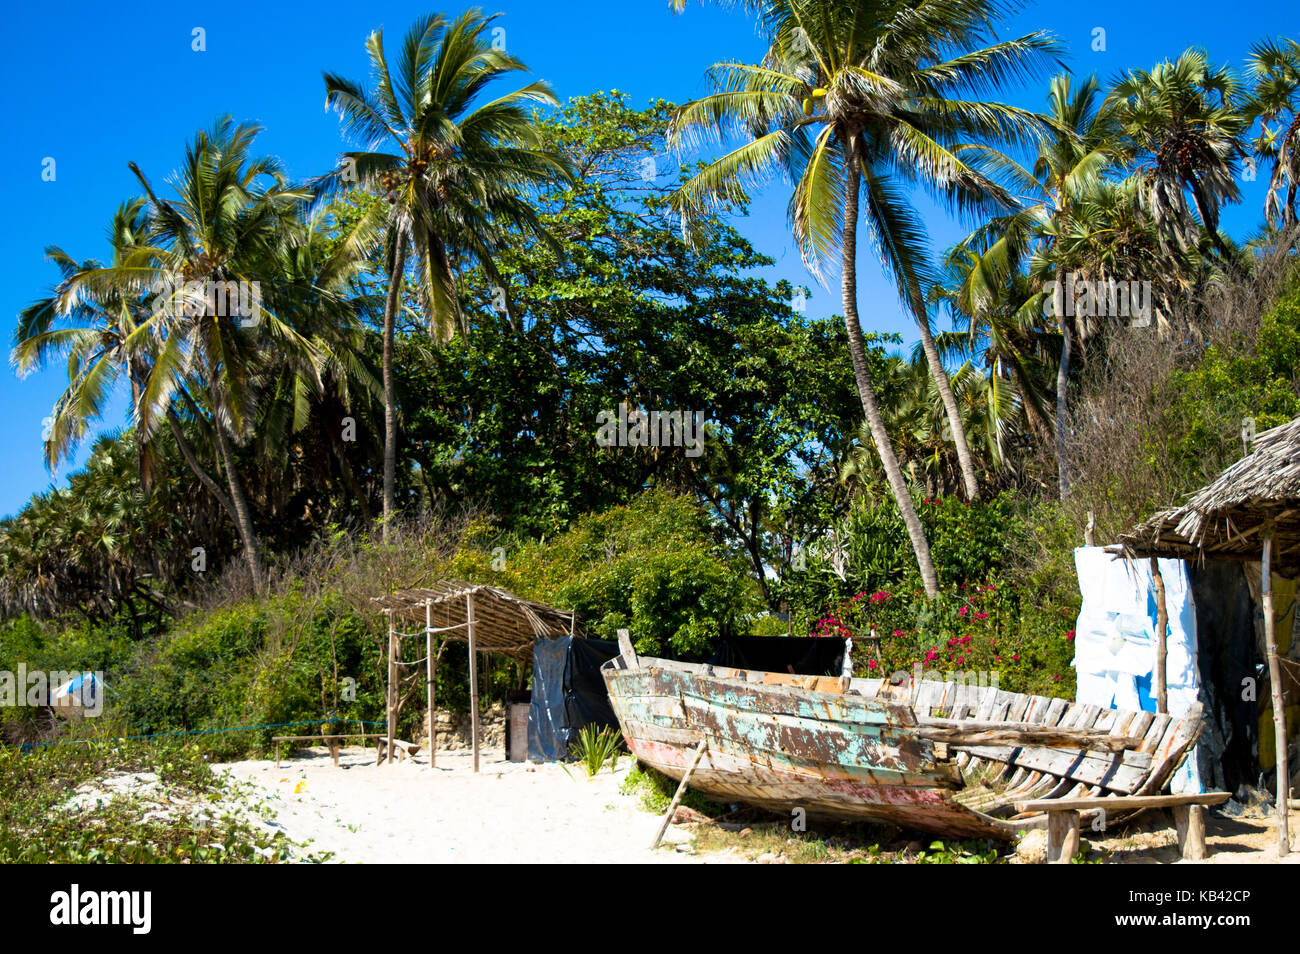 Una barca alla spiaggia con palme Foto Stock